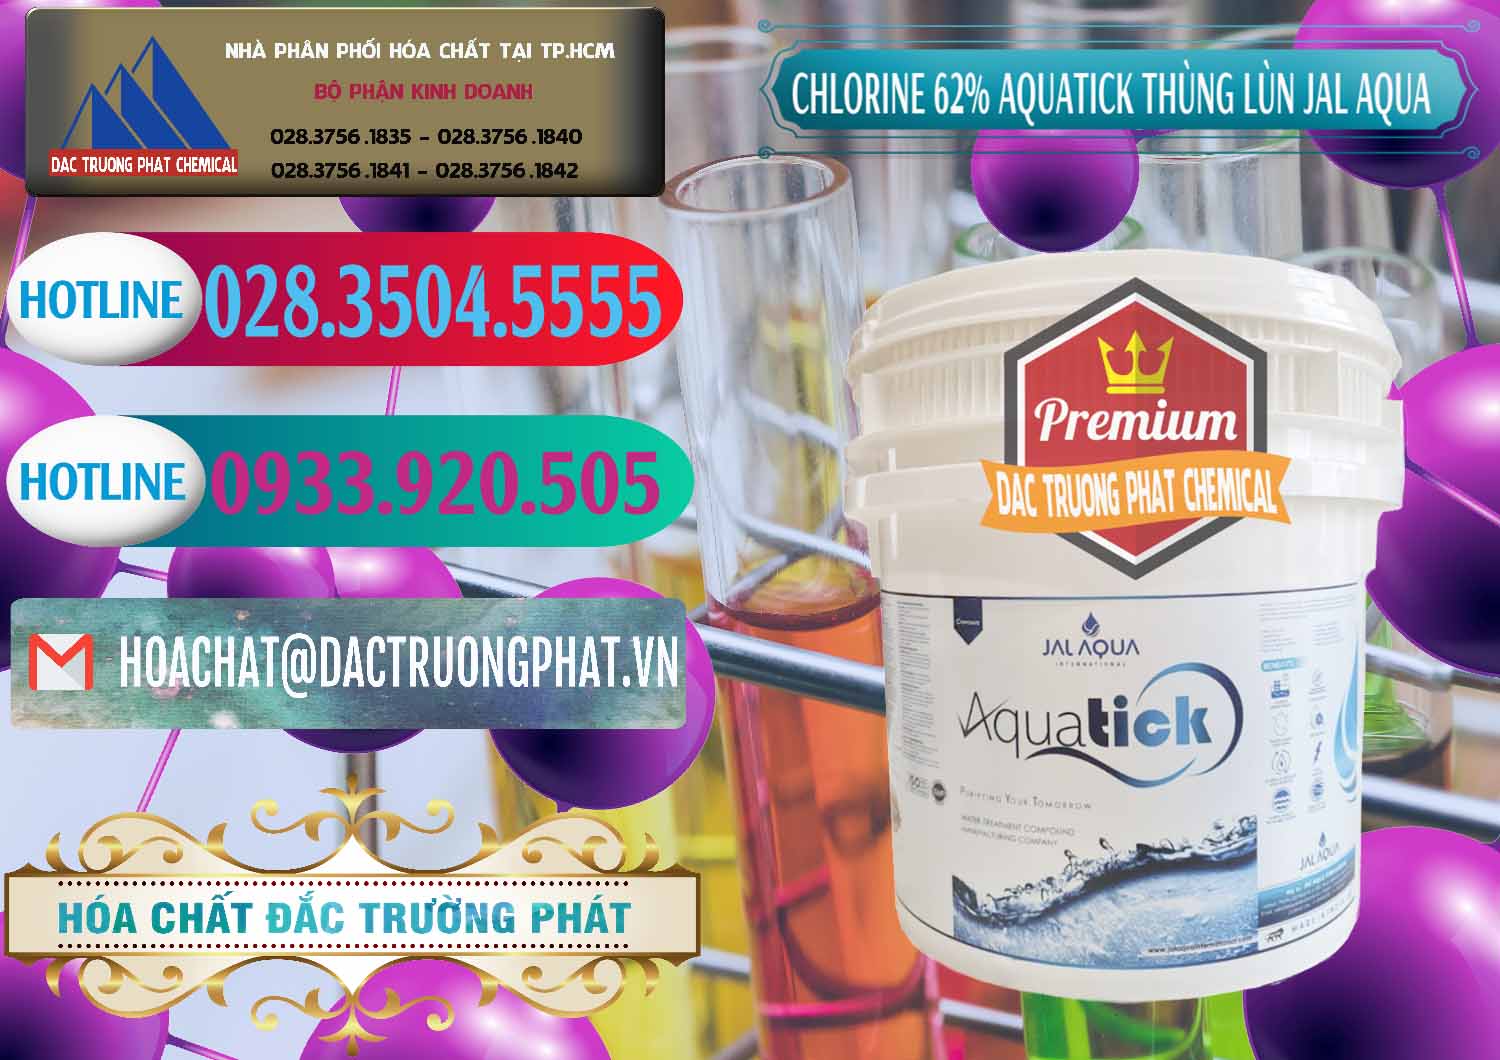 Bán & phân phối Chlorine – Clorin 62% Aquatick Thùng Lùn Jal Aqua Ấn Độ India - 0238 - Cty kinh doanh - phân phối hóa chất tại TP.HCM - truongphat.vn